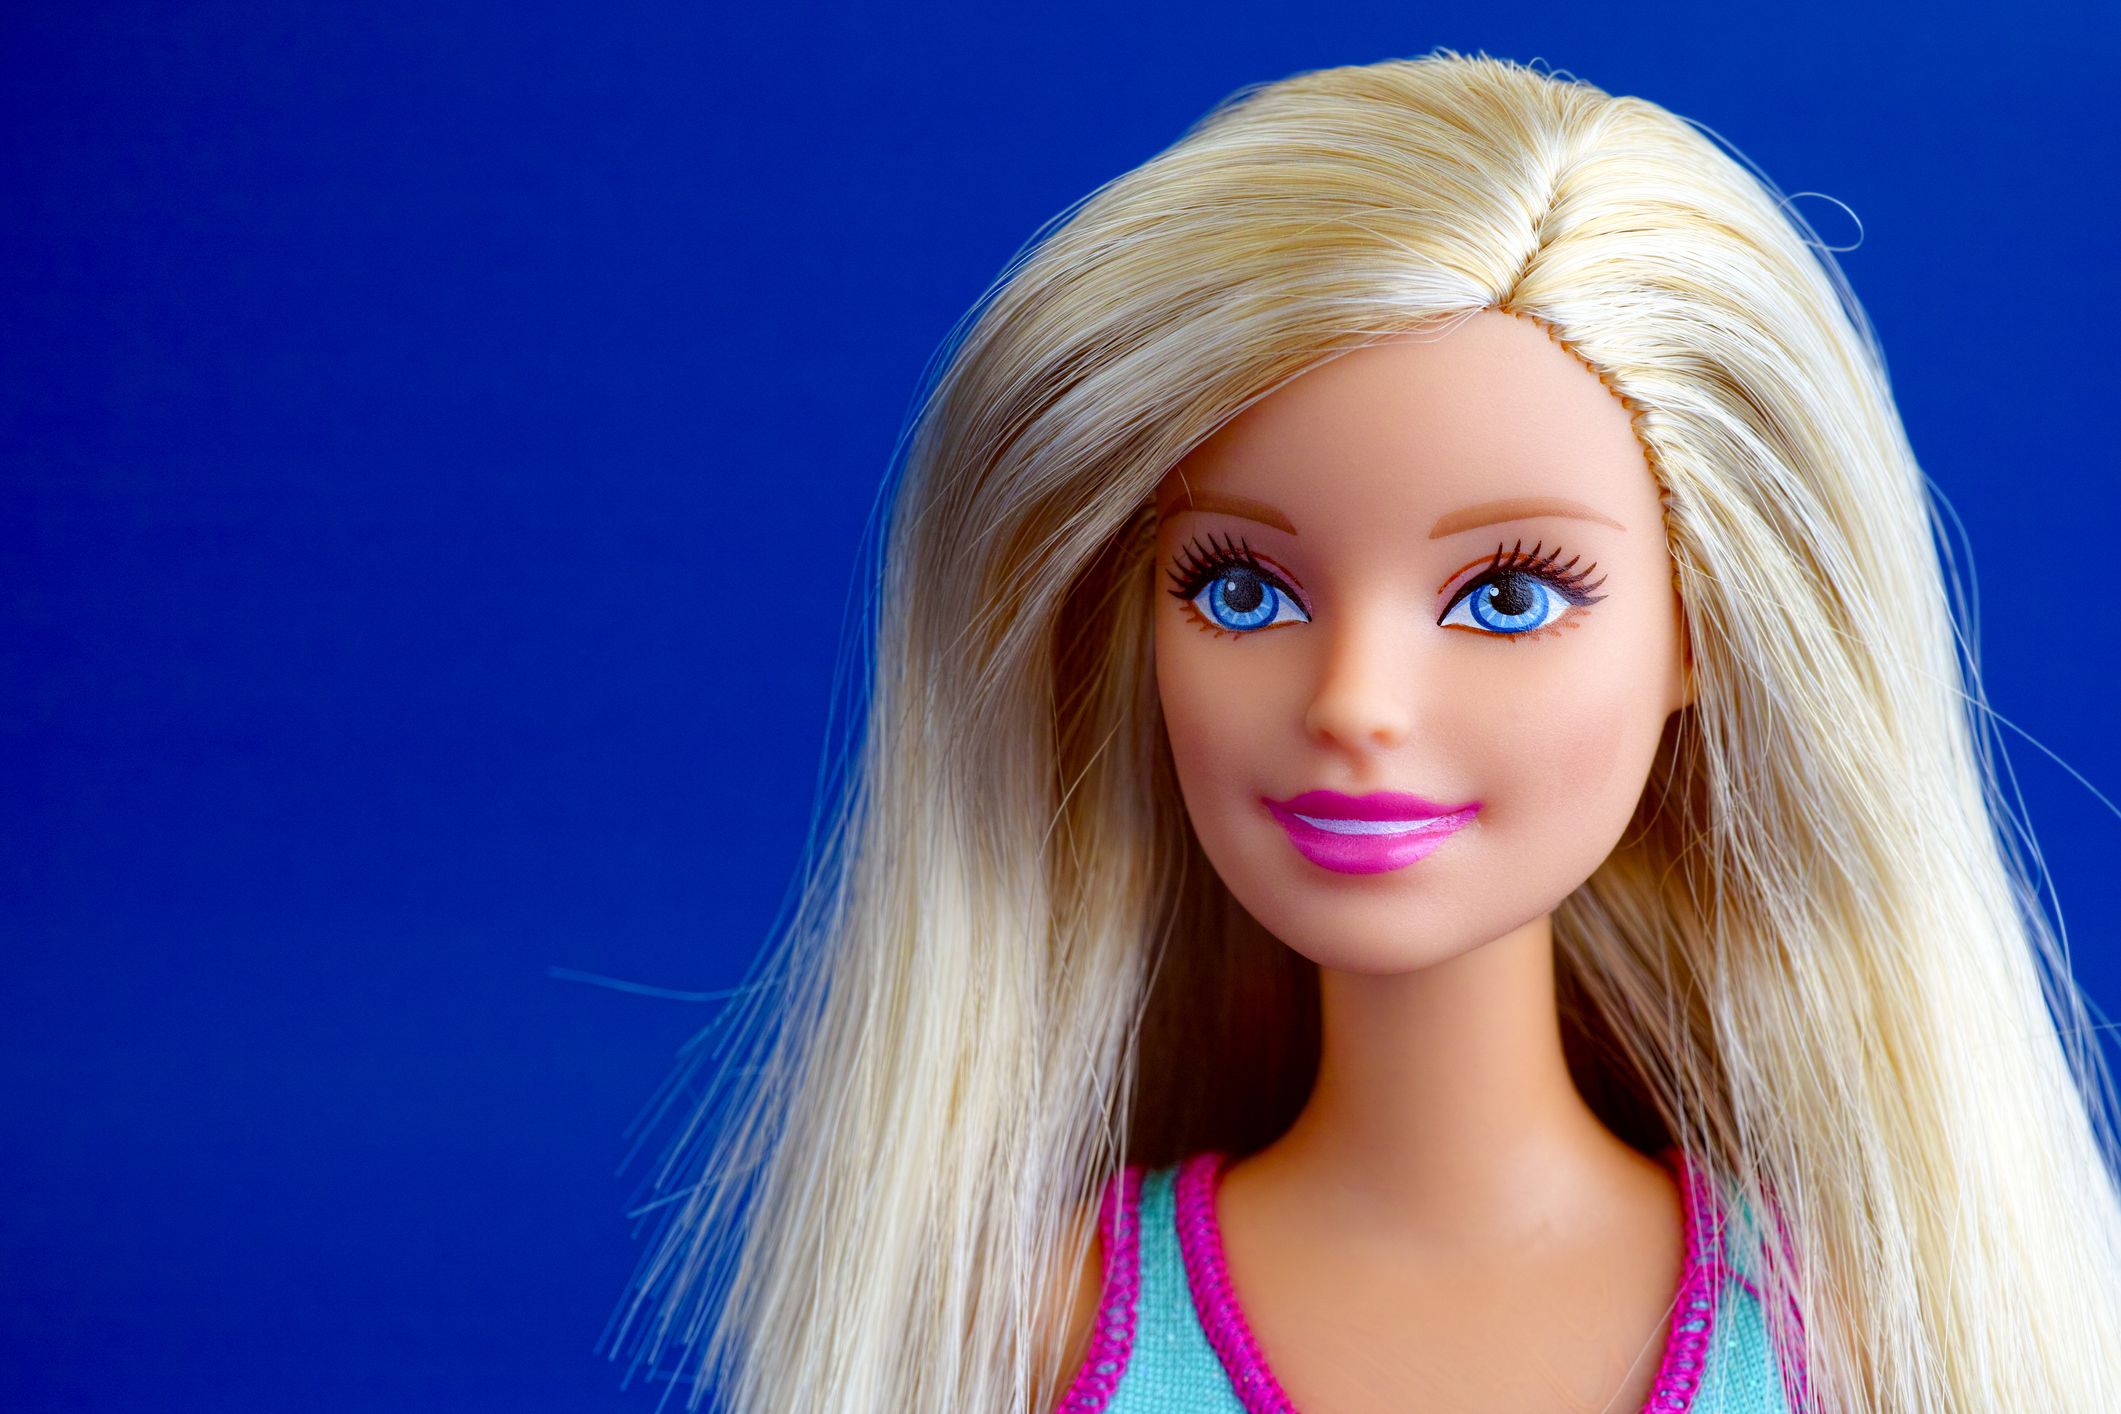 I stor skala Er deprimeret salvie 40 Barbie Doll Facts - History and Trivia About Barbies